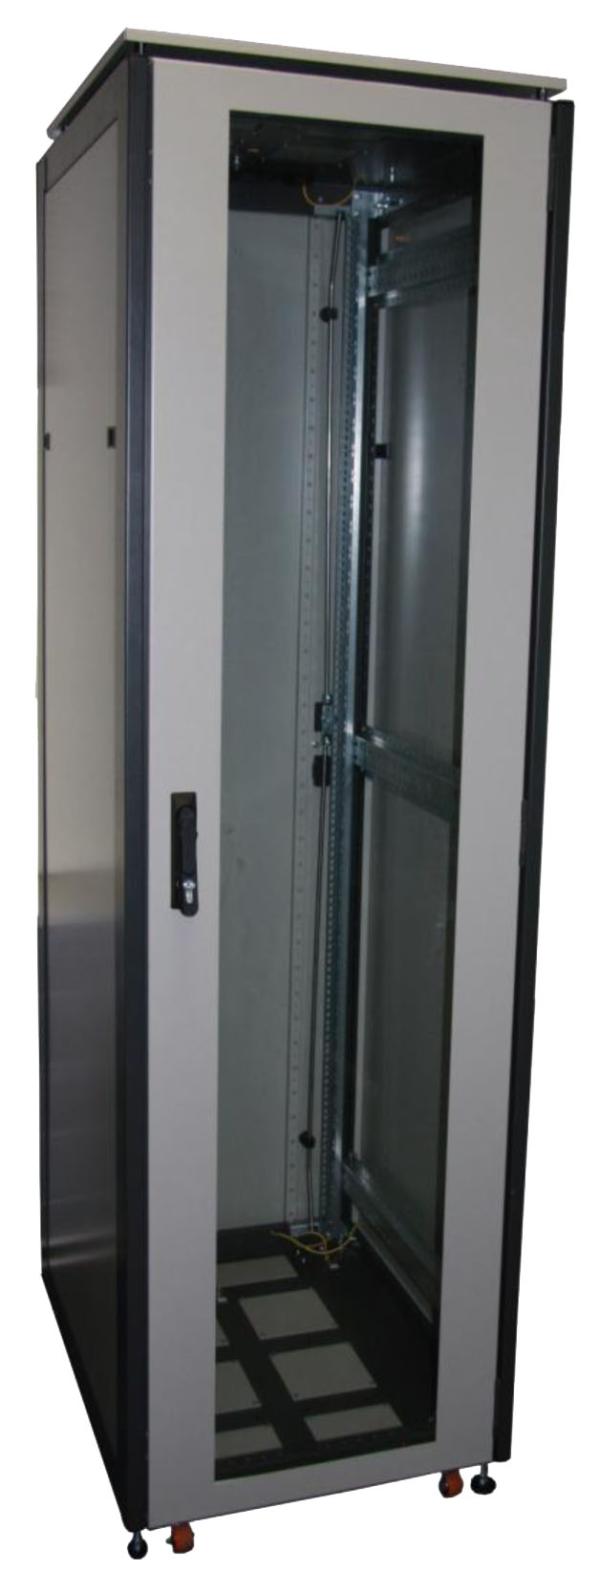 ССКТБ ТОМАСС ШТК-8820Э-02 - шкаф телекоммуникационный 19", 42U, 800х800х2000 мм, с металлической задней панелью и металлической дверью